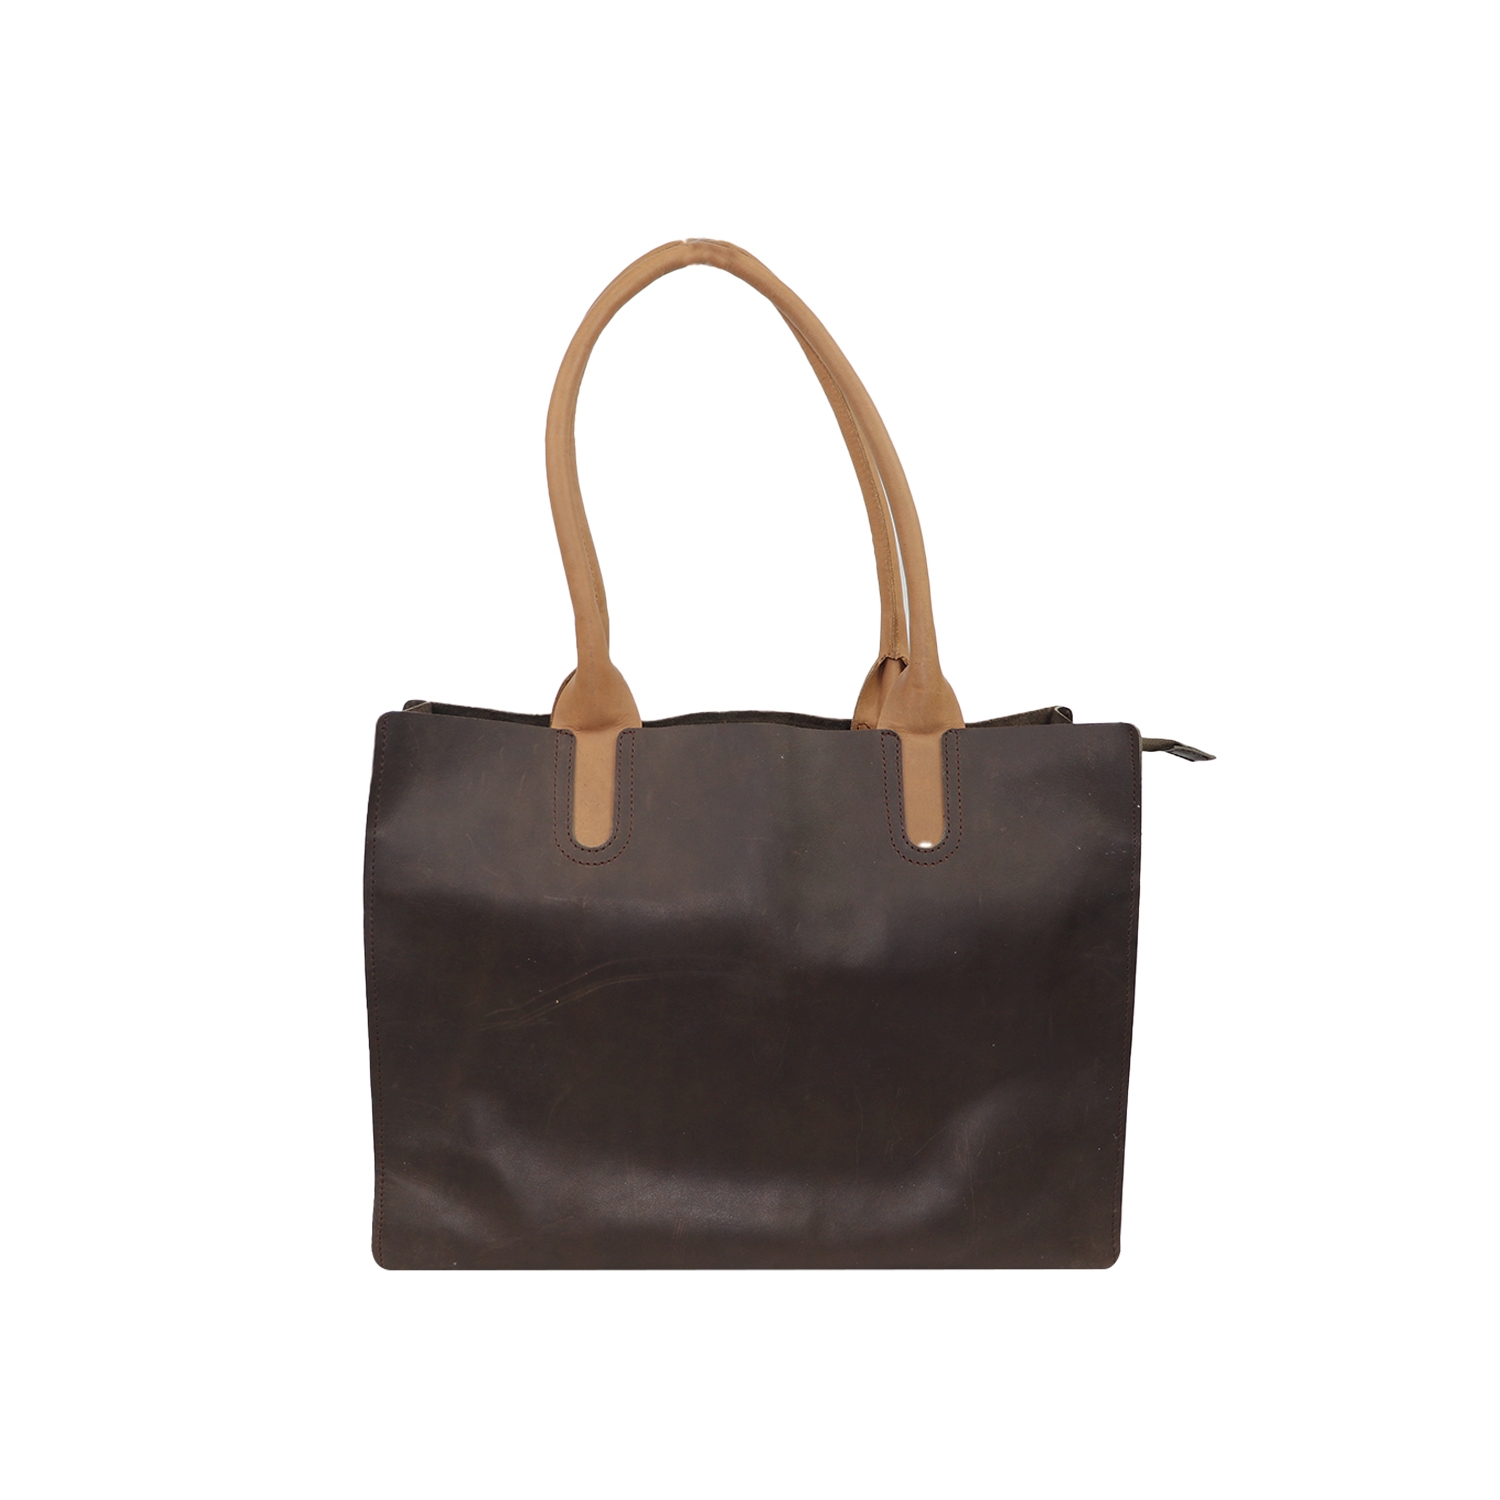 EMM | Tote Bag with Leather Shoulder Straps - Black